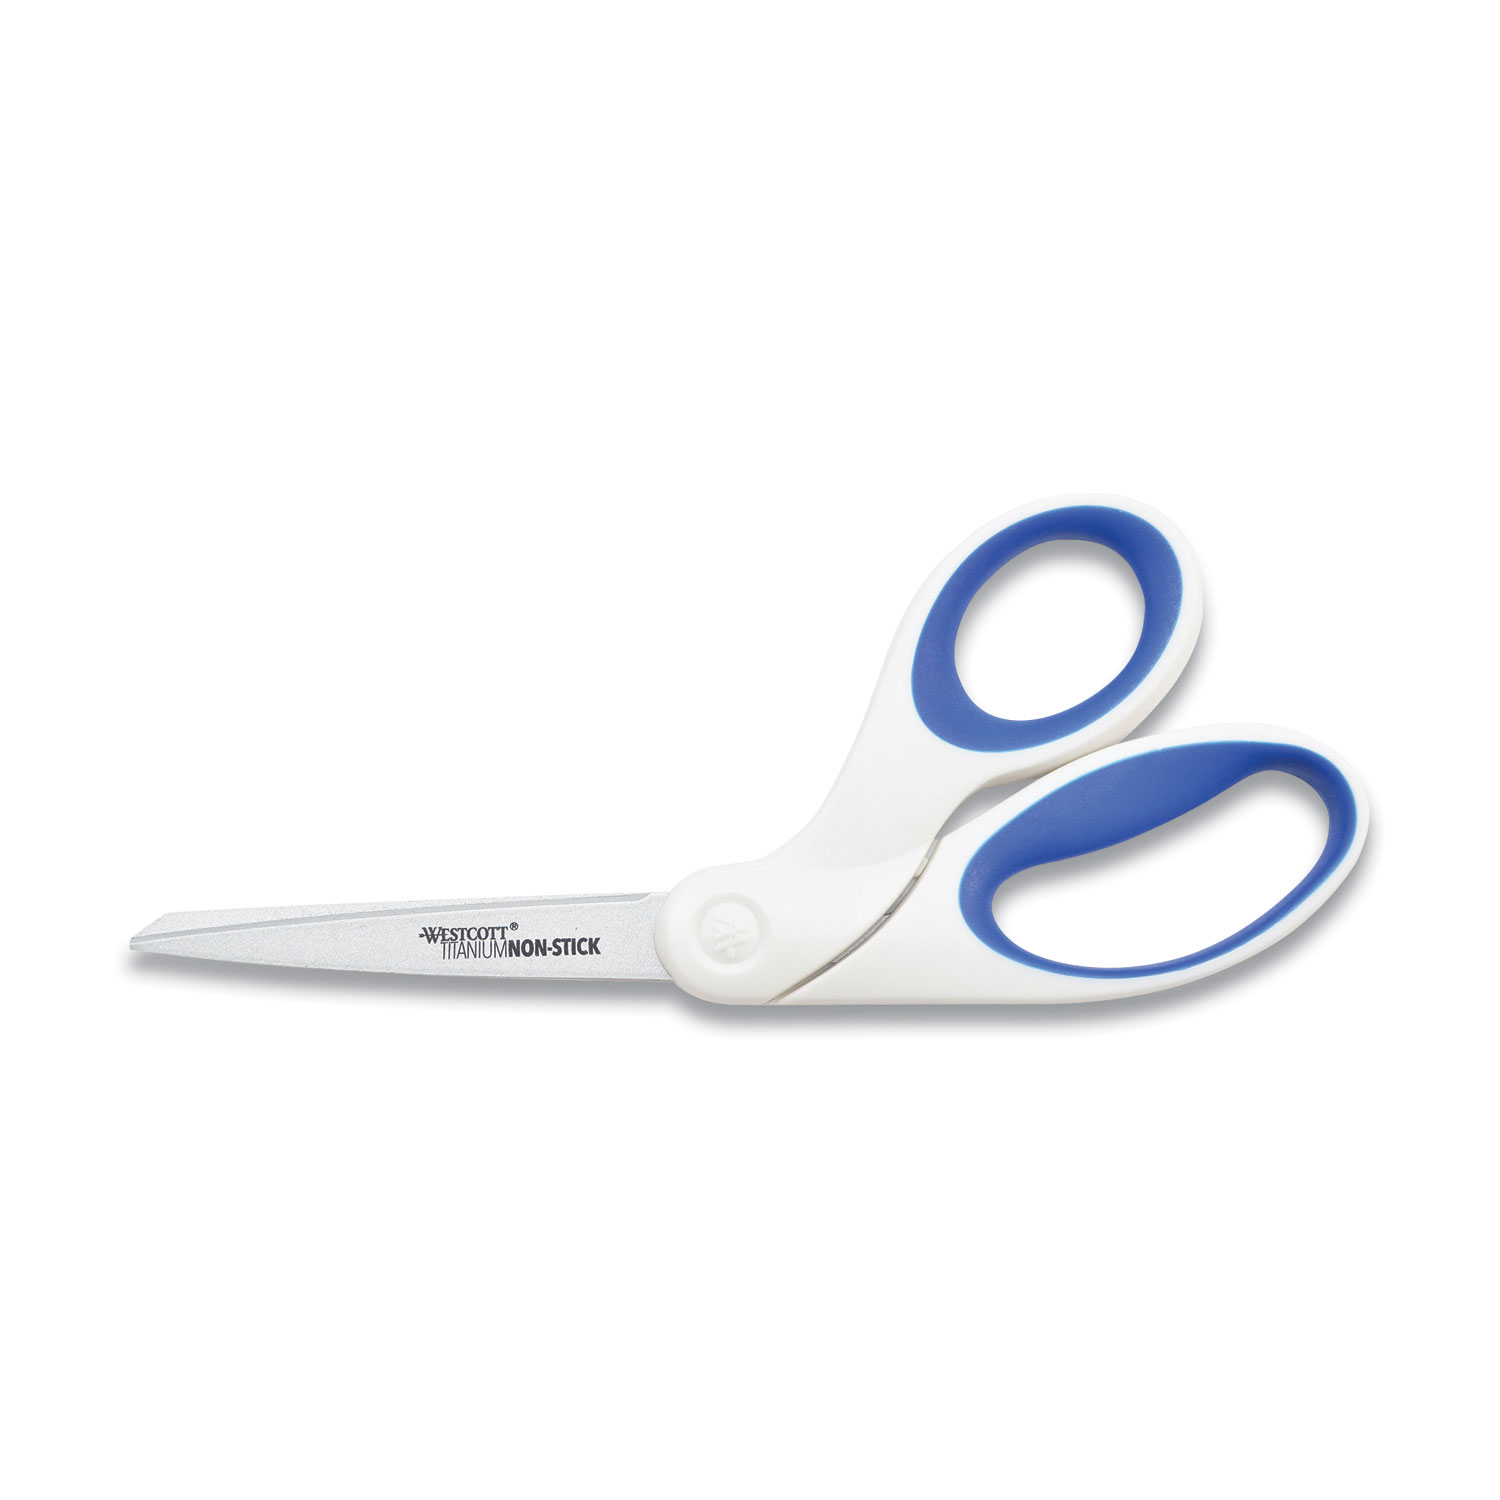 Westcott® Non-Stick Titanium Bonded Scissors, 8 Long, 3.25 Cut Length, White/Blue Bent Handle